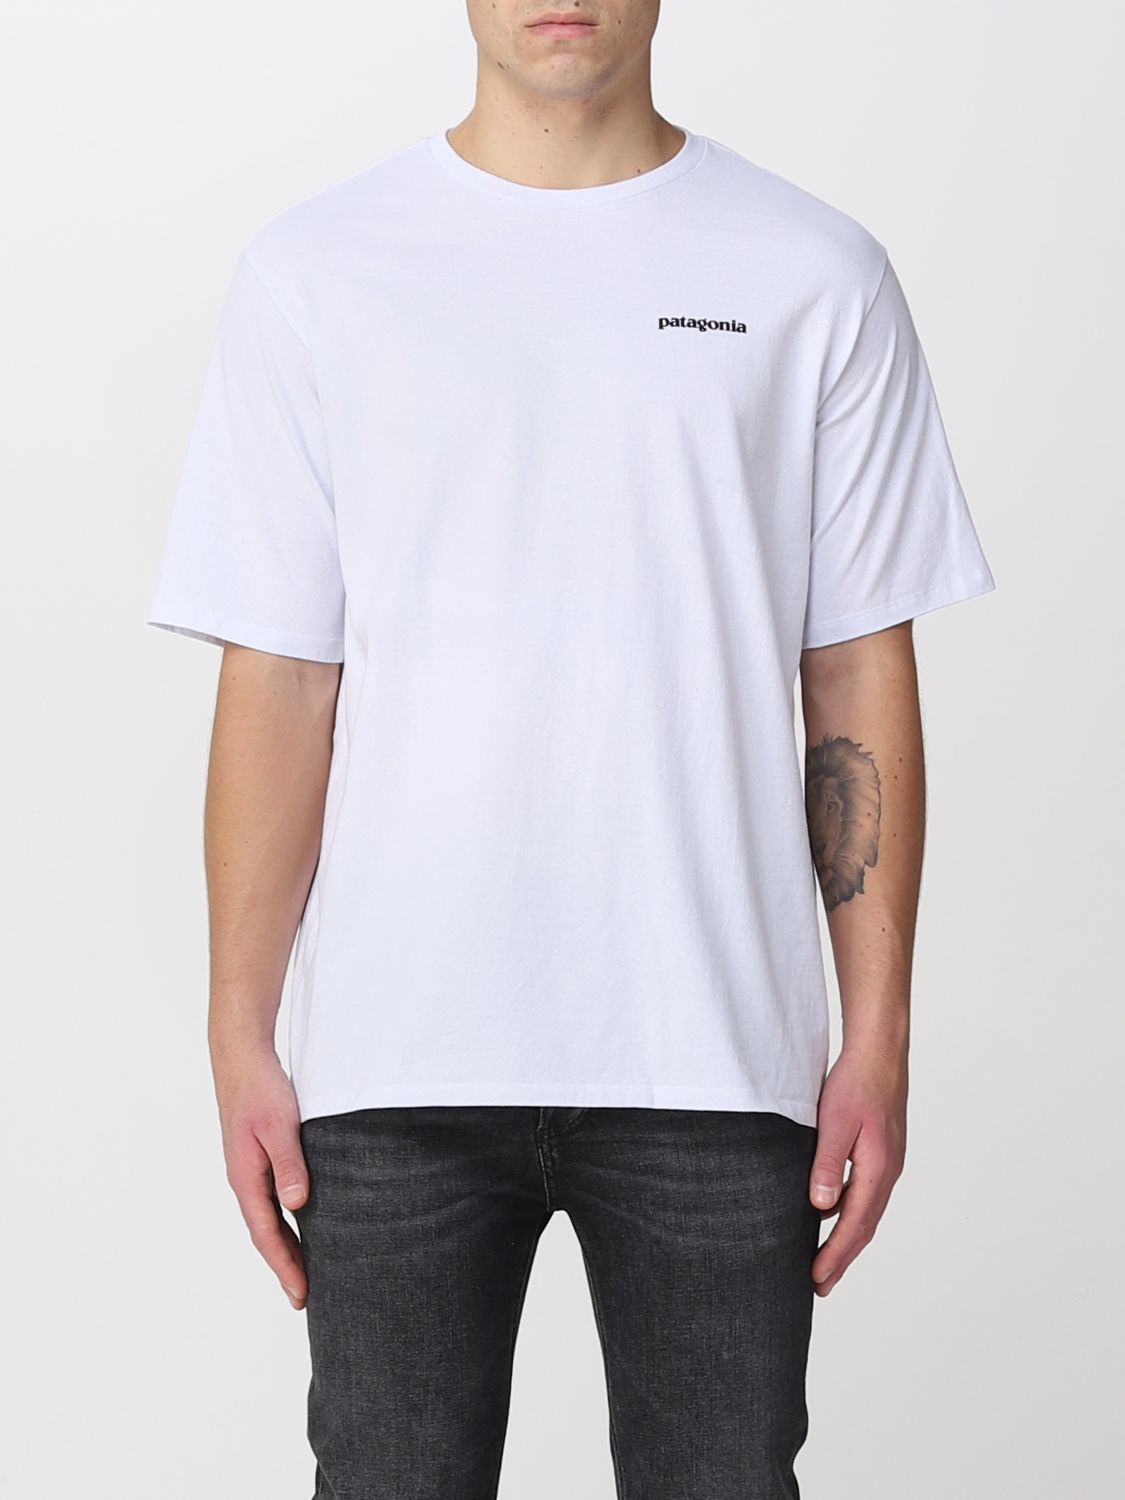 Patagonia Tシャツ メンズ ホワイト Giglio Comオンラインのpatagonia Tシャツ